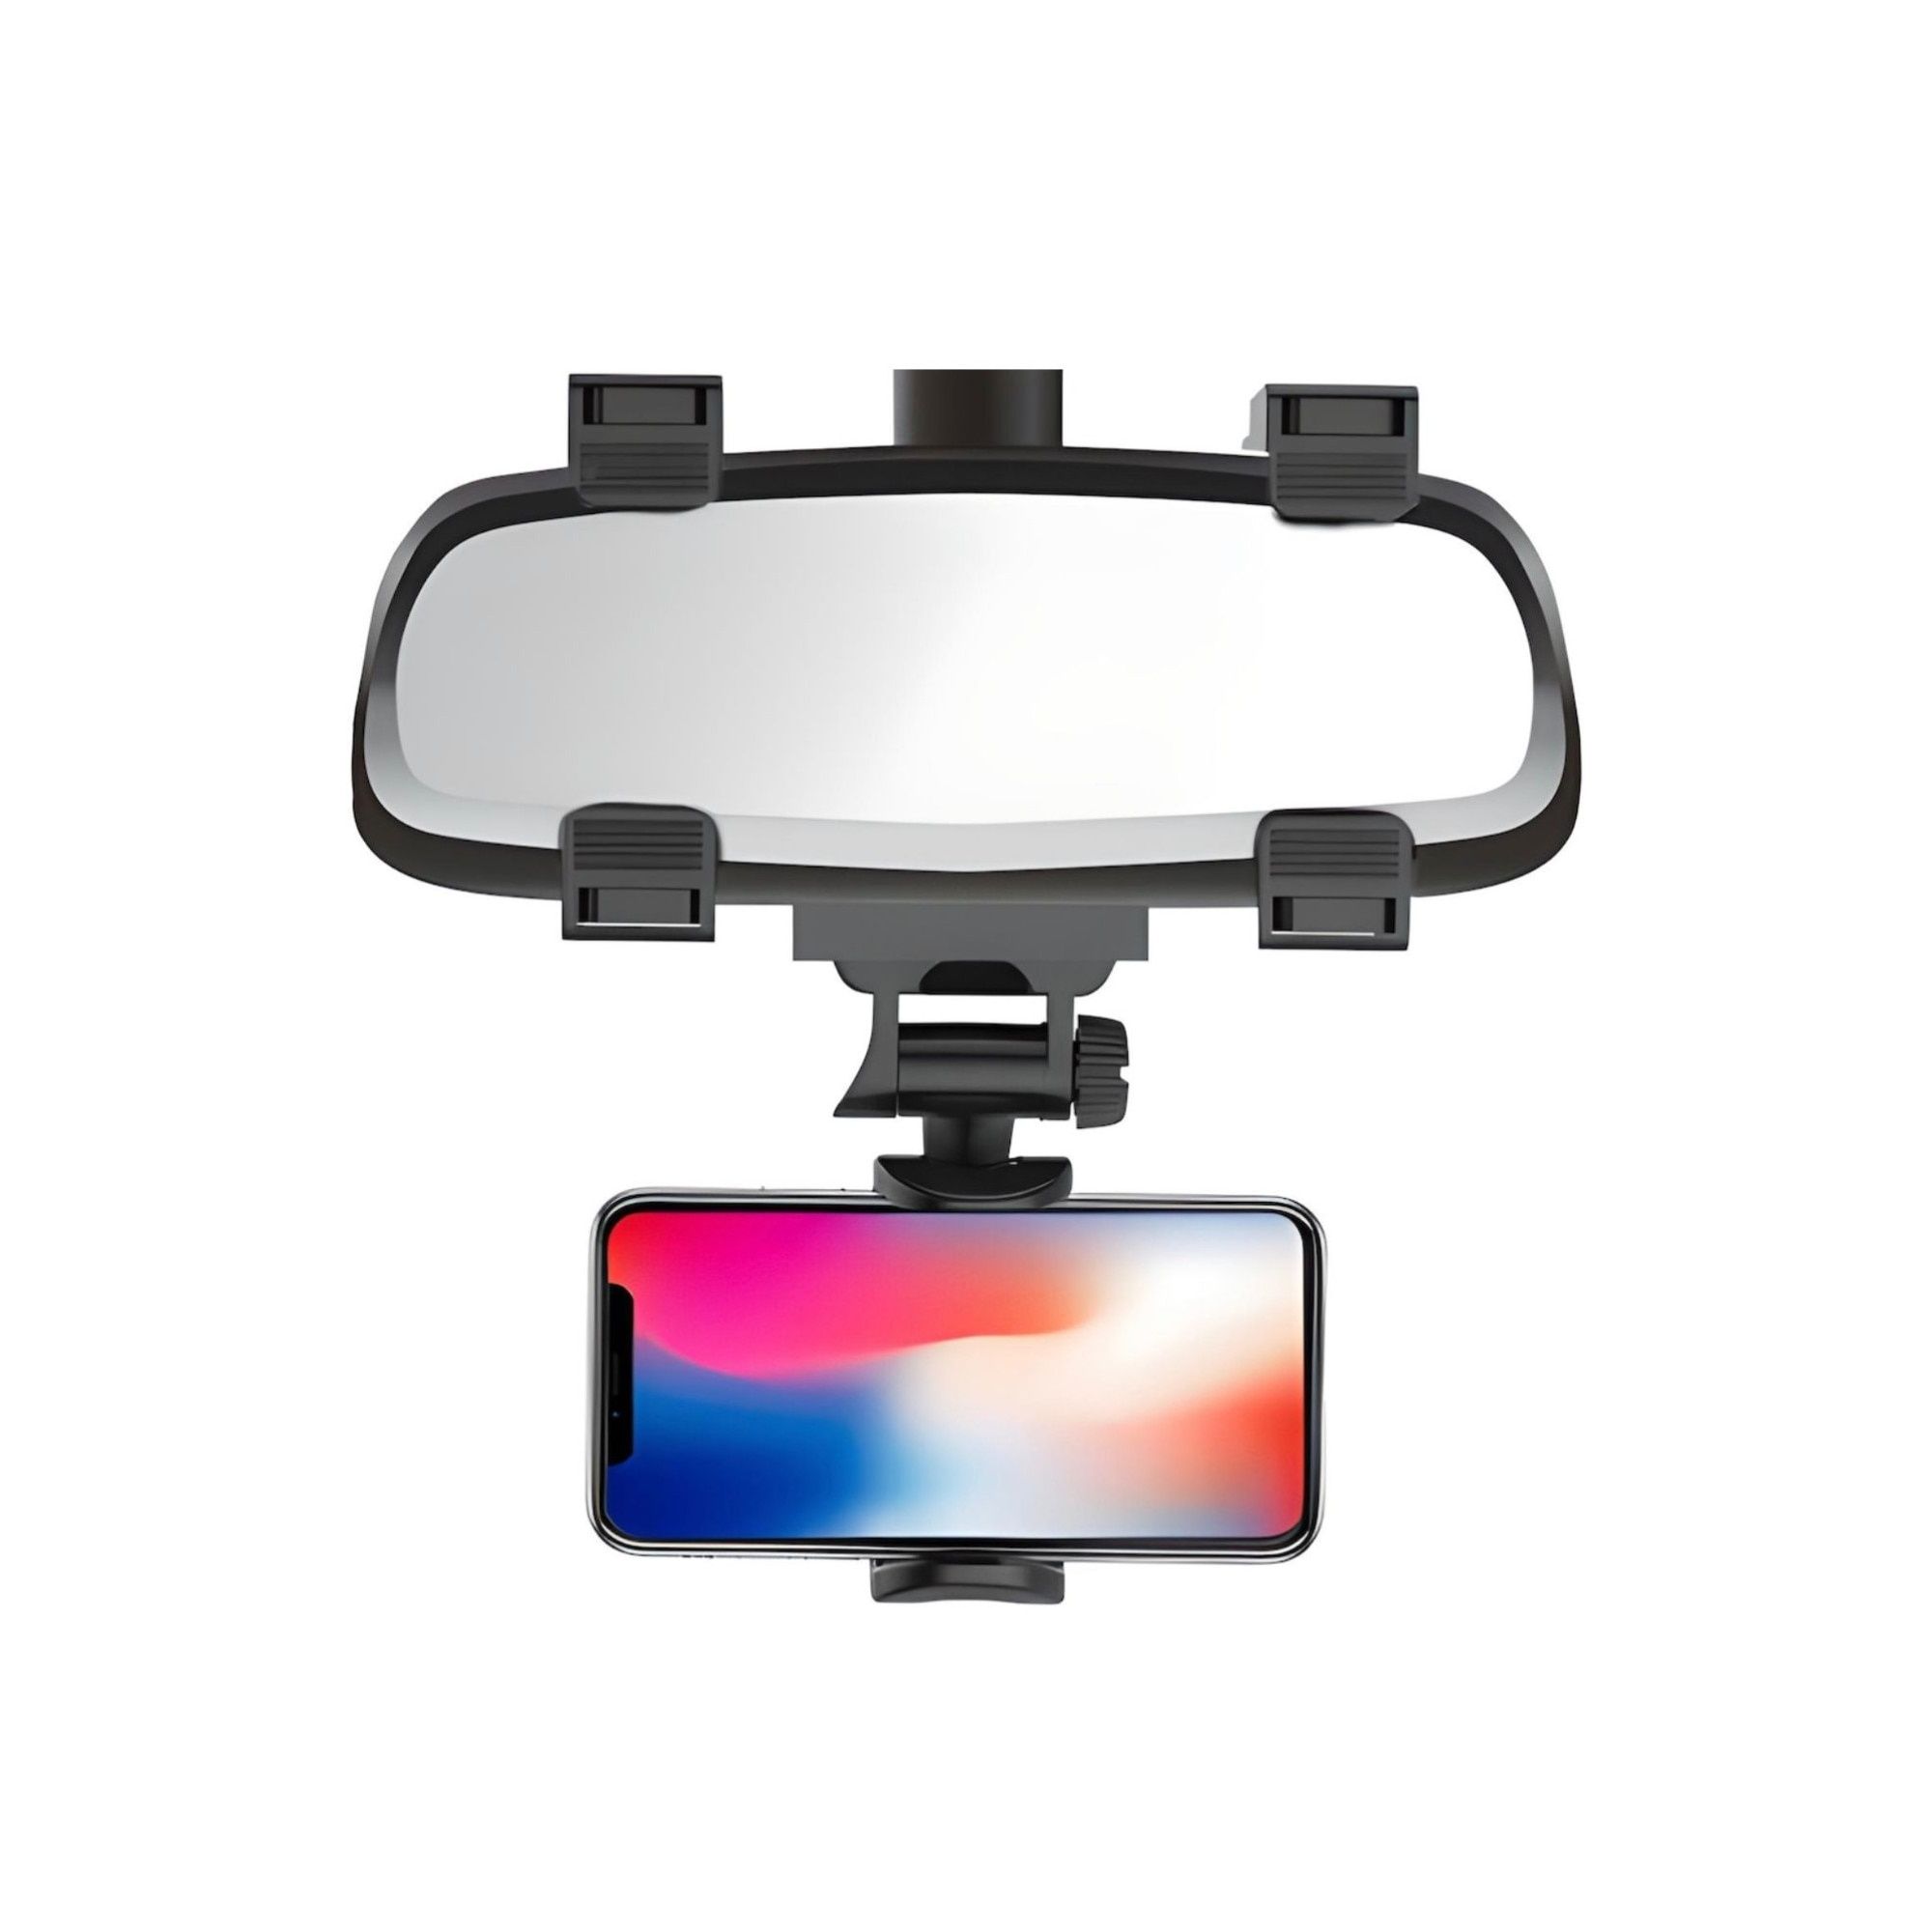 Suport pentru prindere telefon la oglinda retrovizoare, Rotativ 360